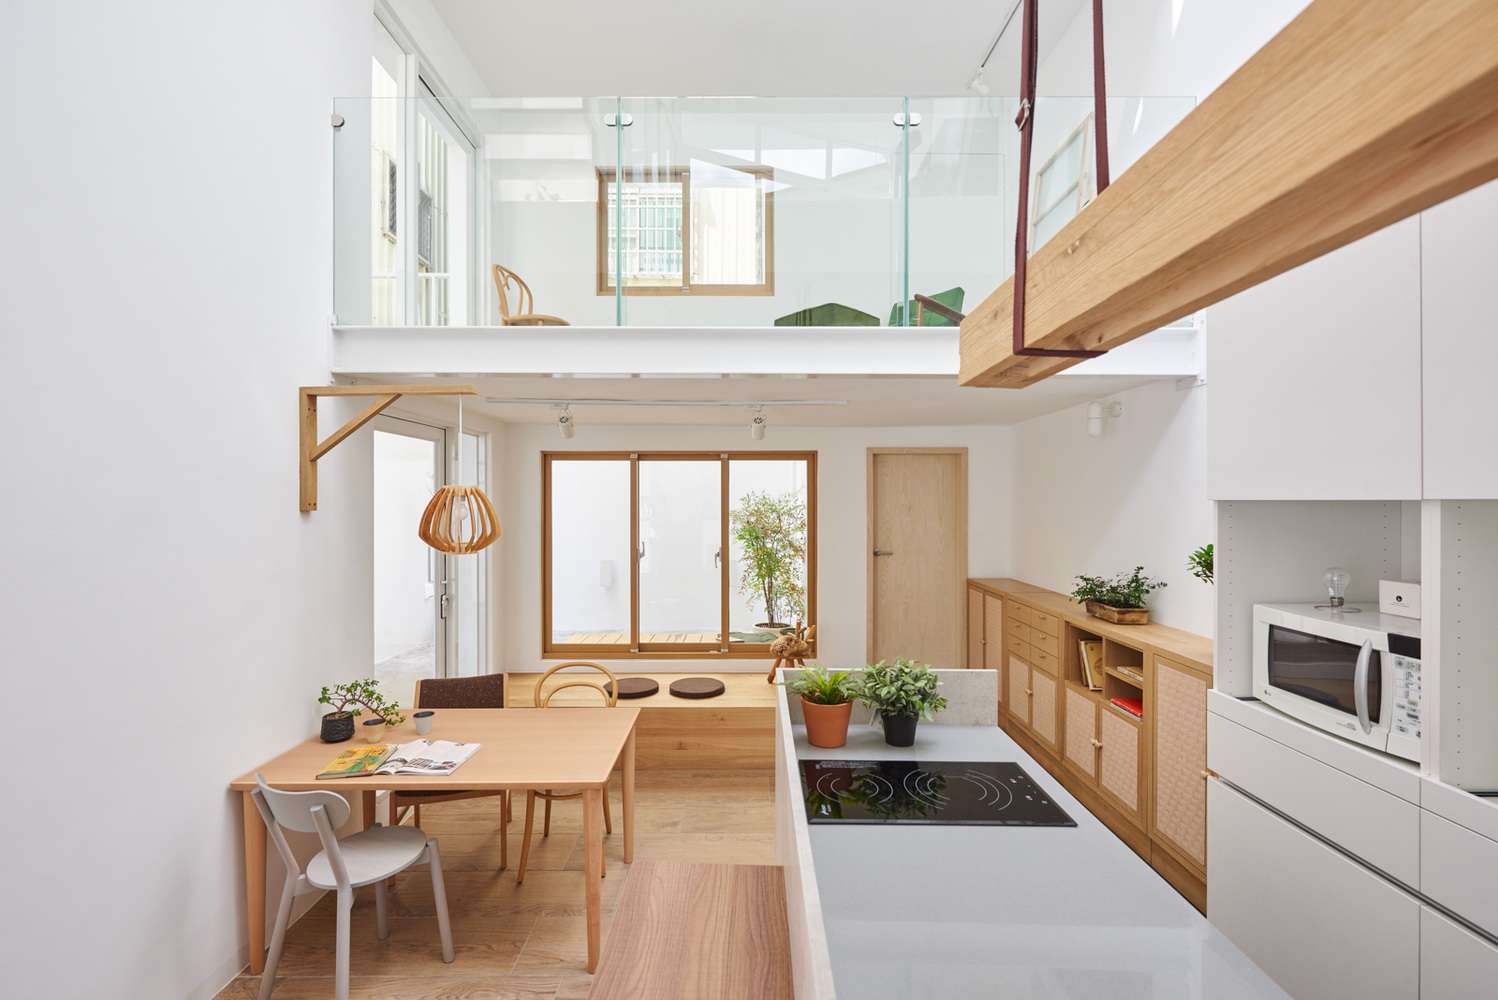 Mẫu thiết kế nội thất nhà cấp 4 có gác lửng khác mà bạn có thể tham khảo. Nếu chuộng phong cách Nhật tối giản, thì bạn không nên bỏ qua gợi ý này.